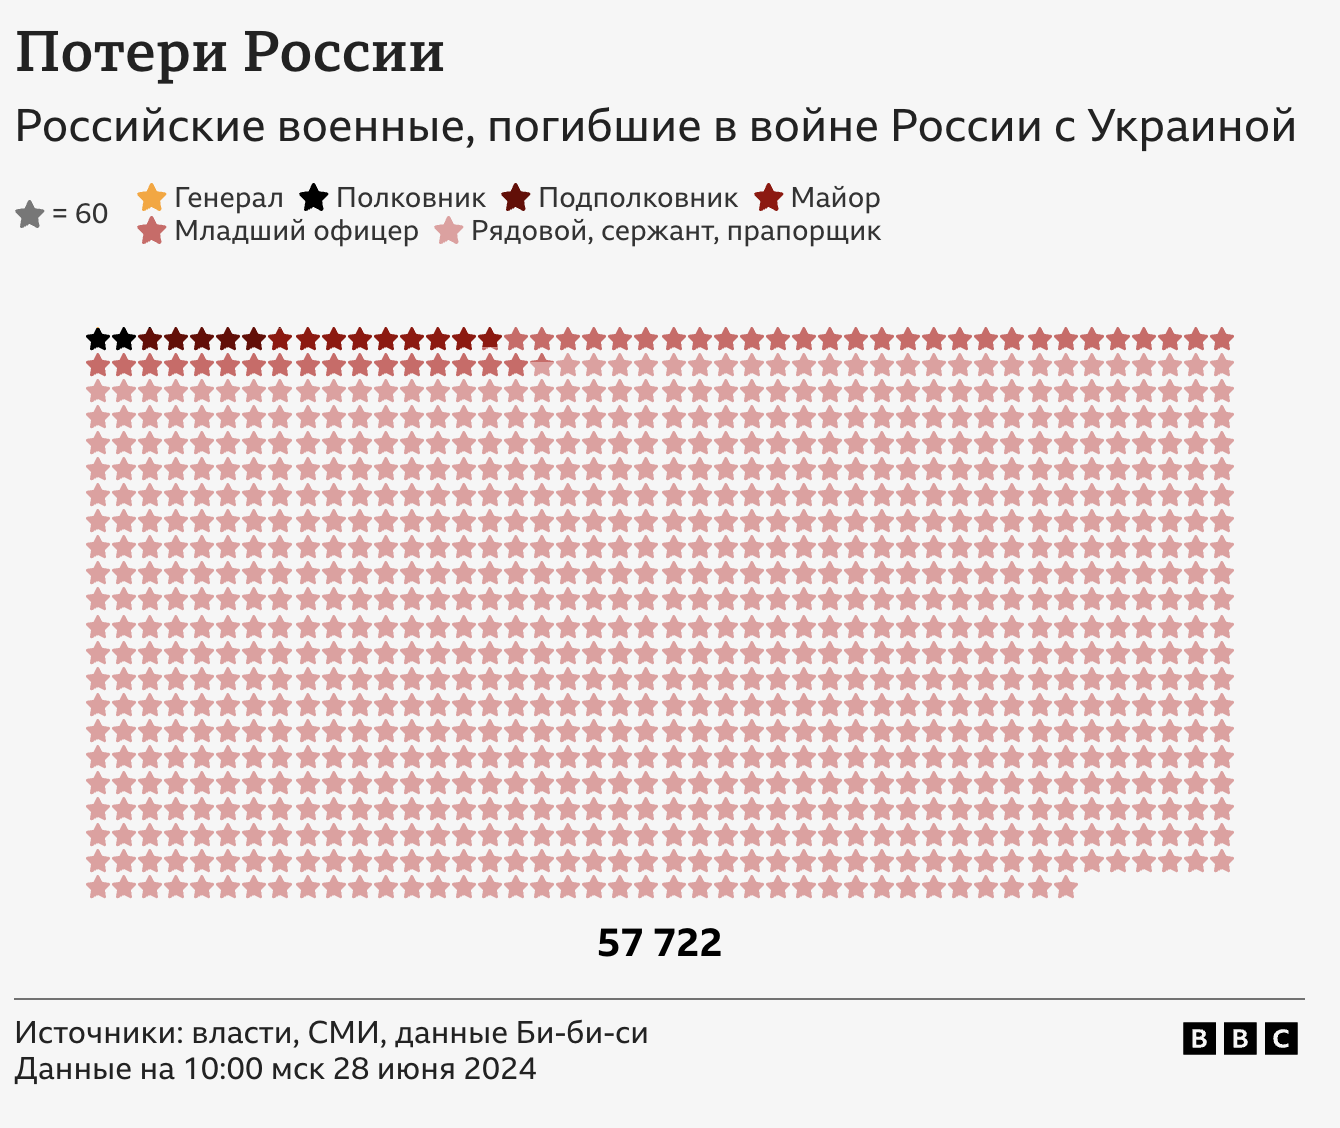 Данные о потерях России в Украине за 855 дней войны